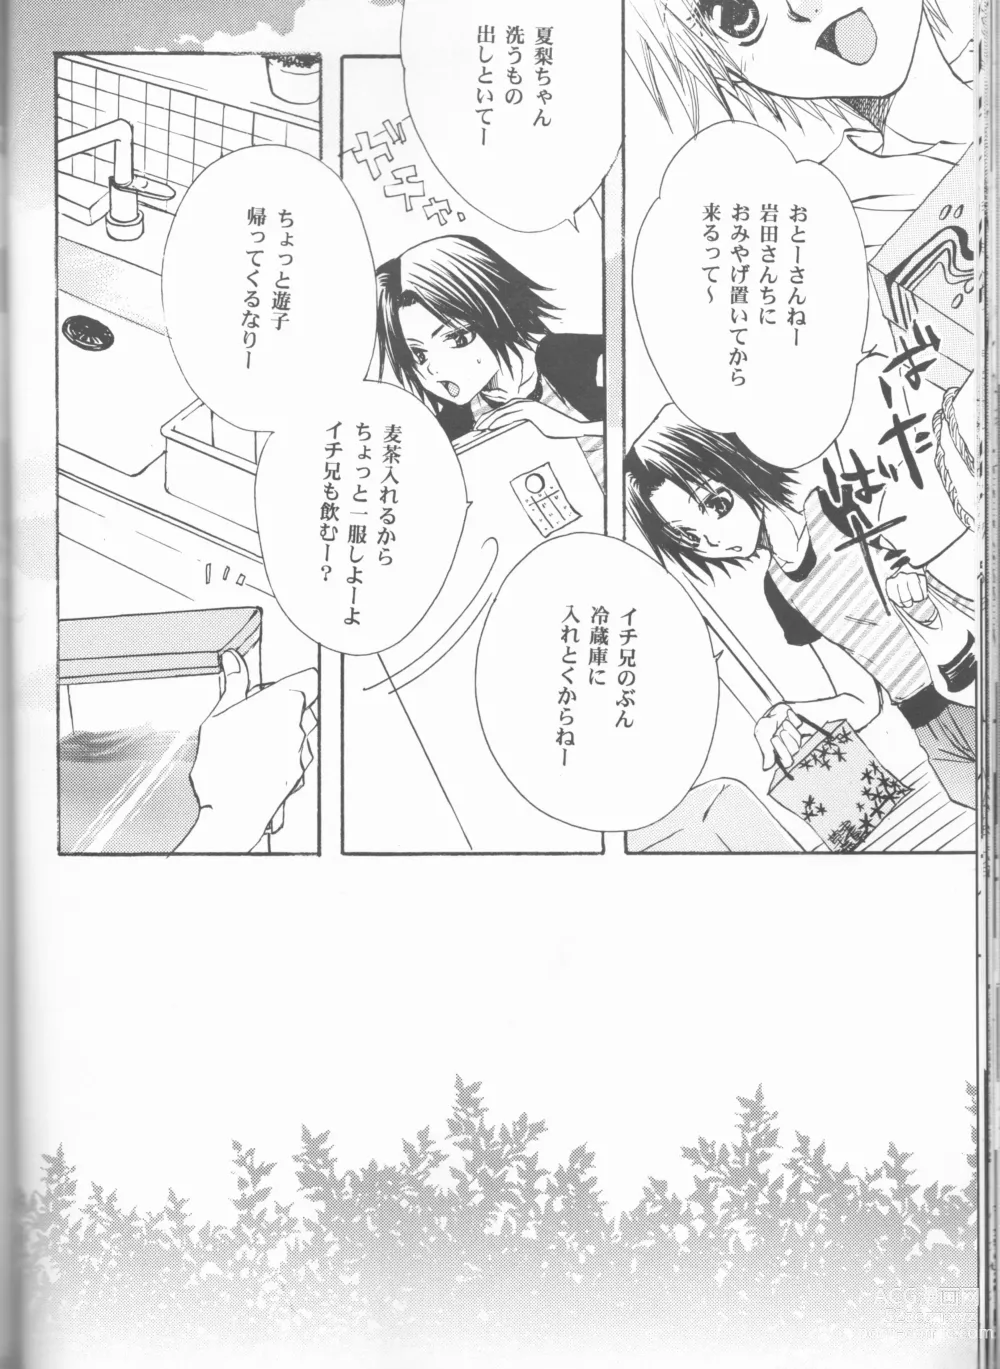 Page 40 of doujinshi Kimi o suki ni natte hajimete no natsu ga kuru.